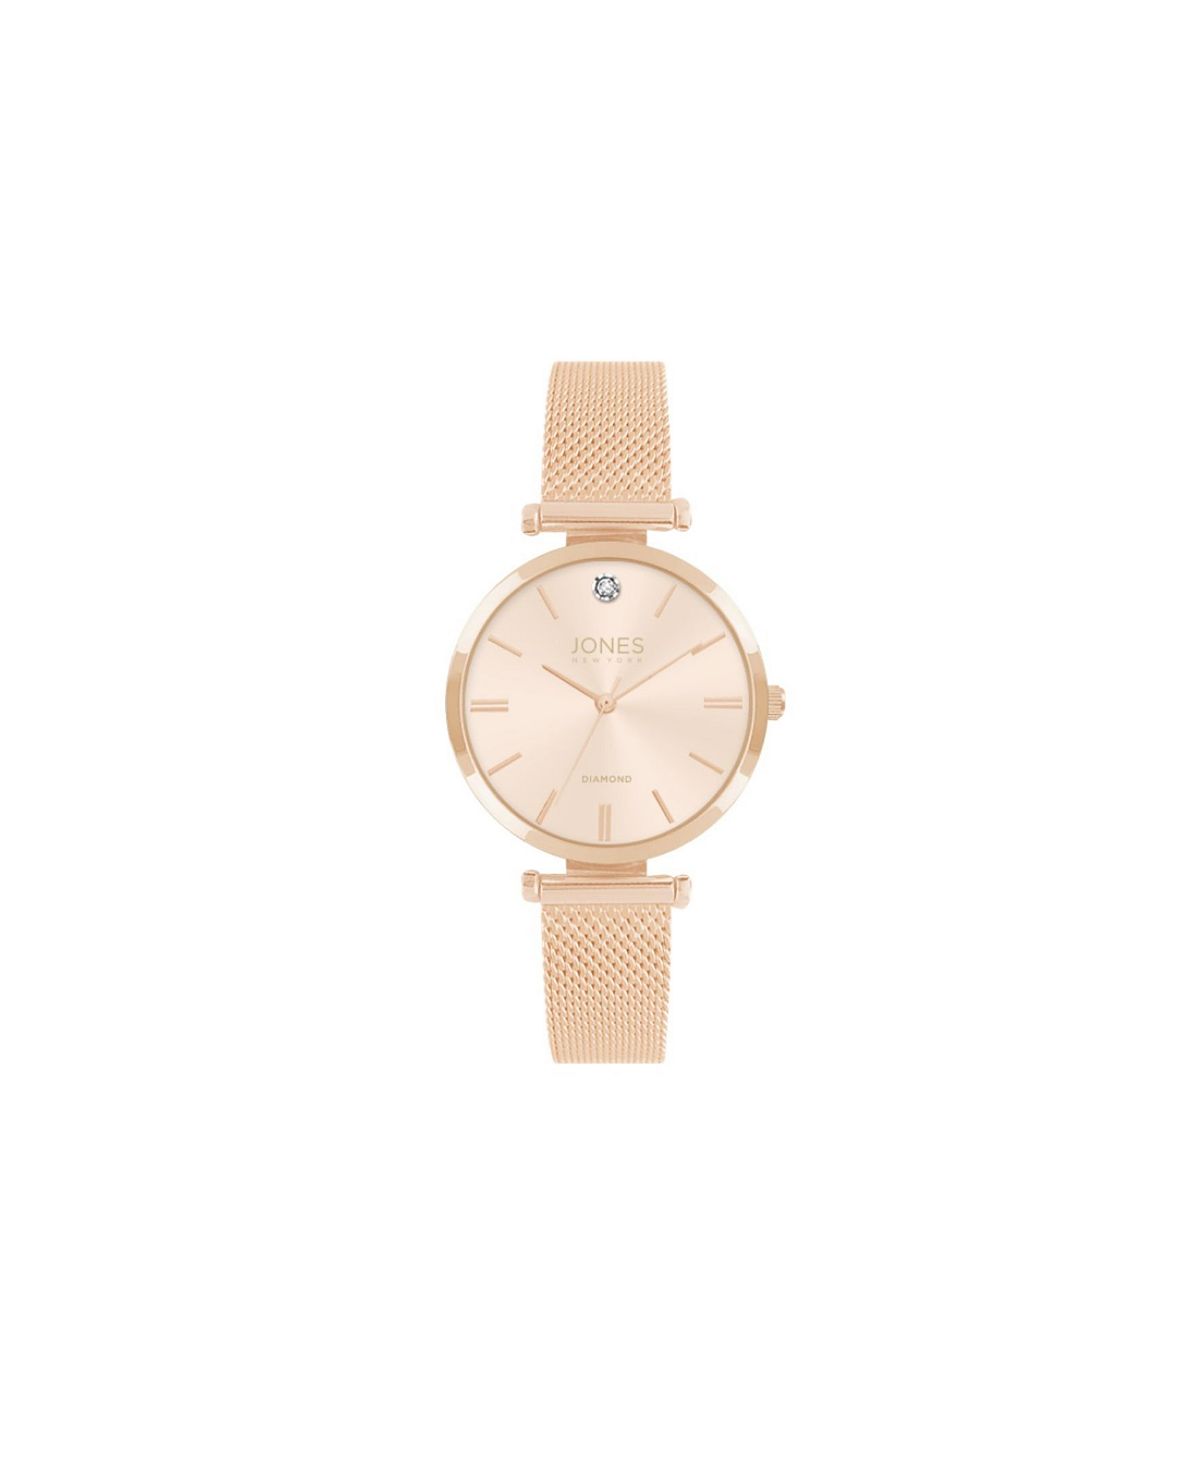 Женские часы с металлическим браслетом и сеткой цвета розового золота, 36 мм Jones New York цена и фото